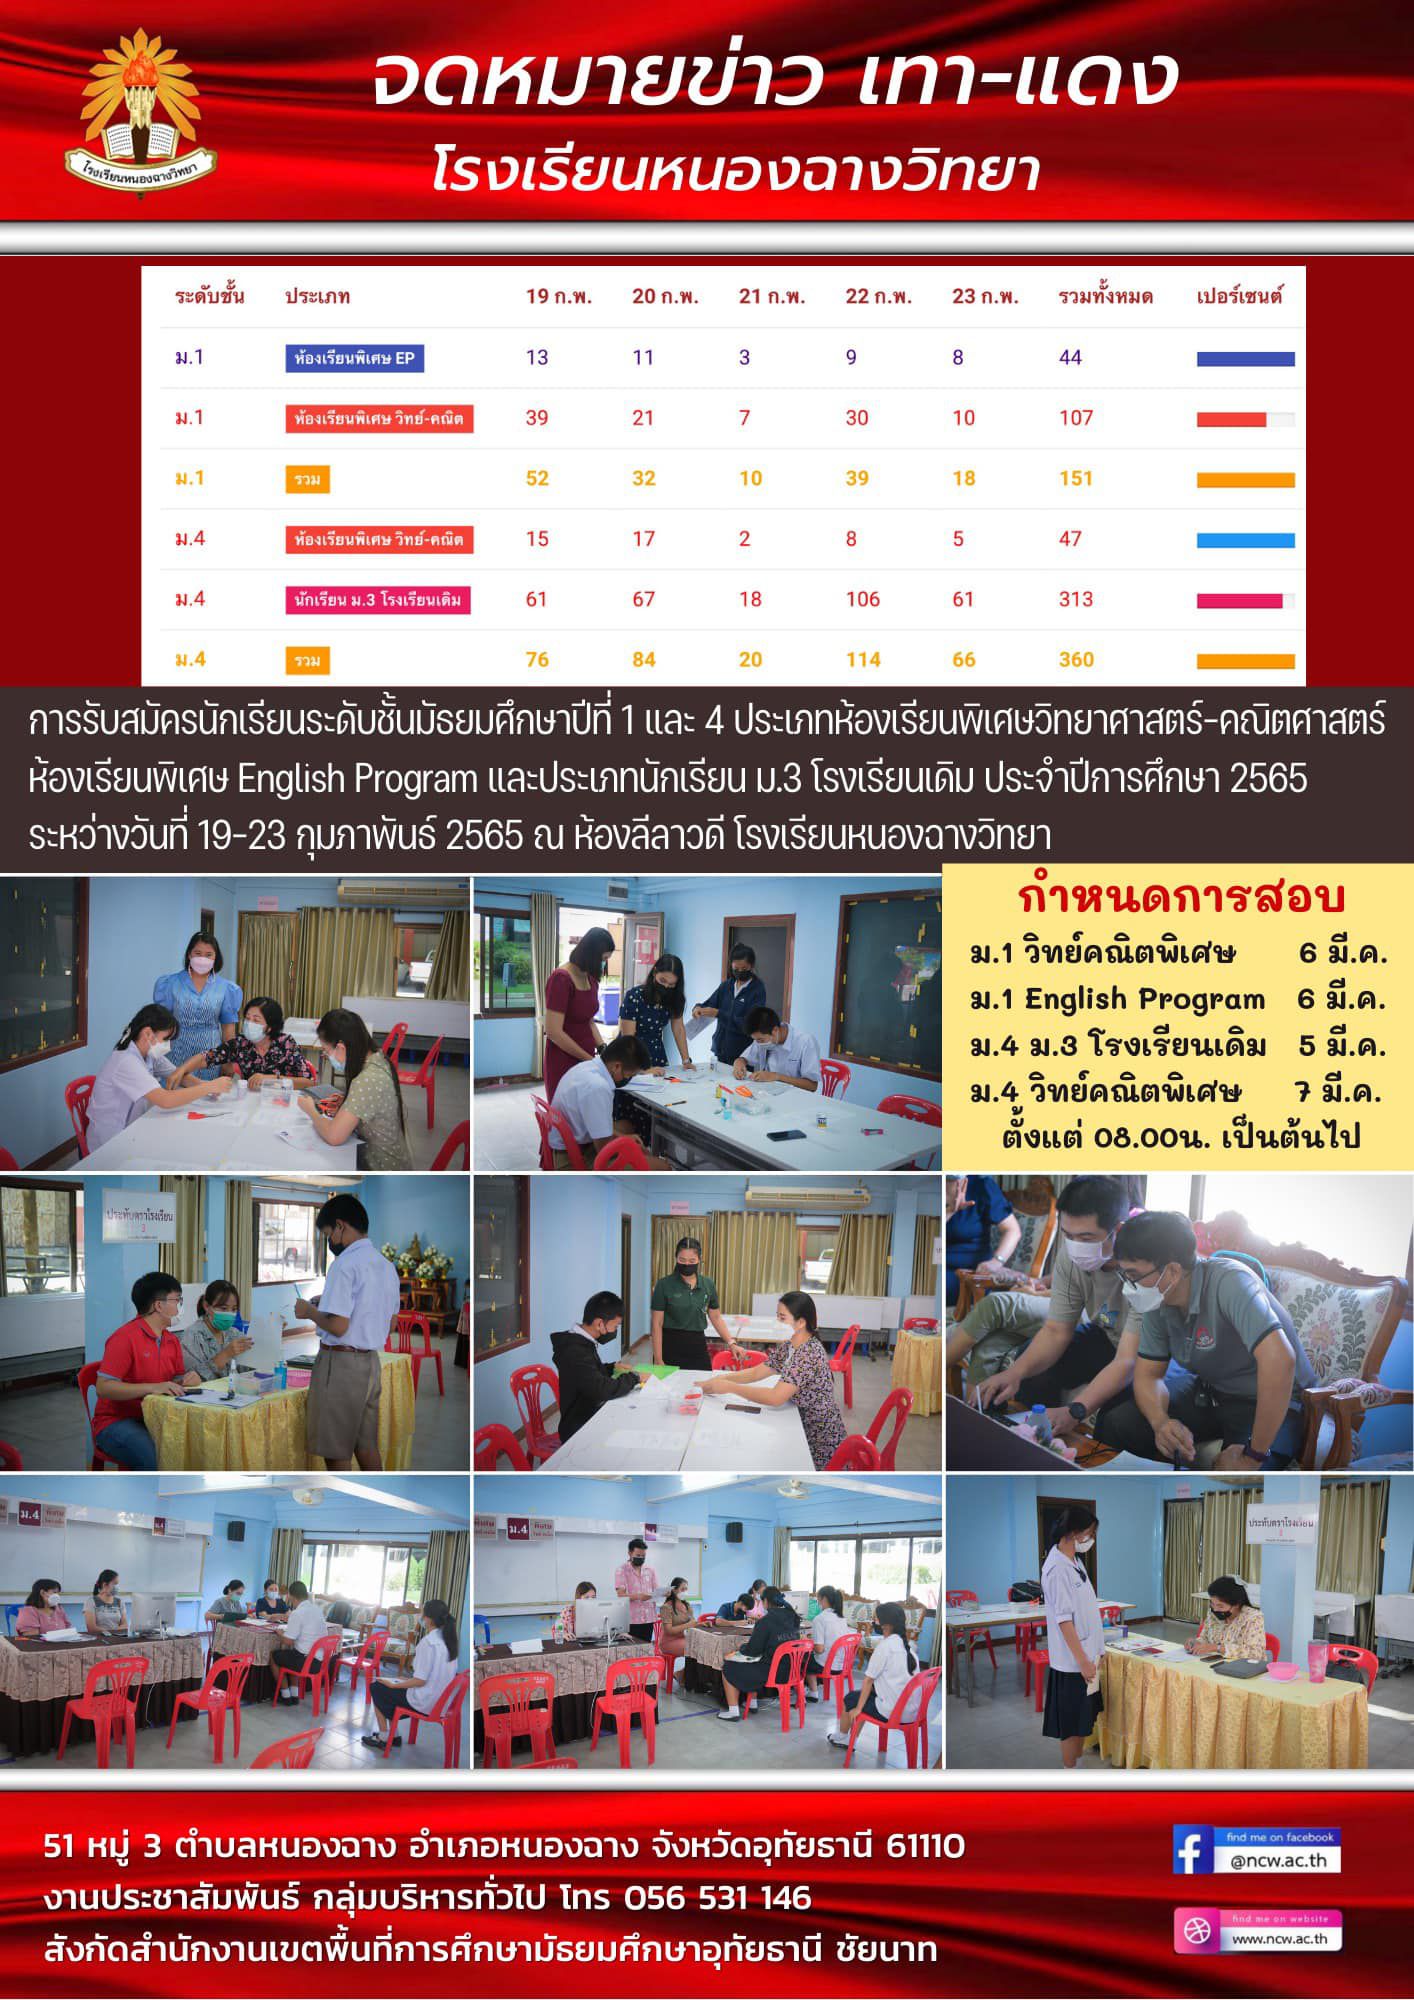 ภาพบรรยากาศการรับสมัครนักเรียนชั้น ม.1,4 ห้องเรียนพิเศษและนักเรียน ม.3 เดิม ประจำปีการศึกษา 2565